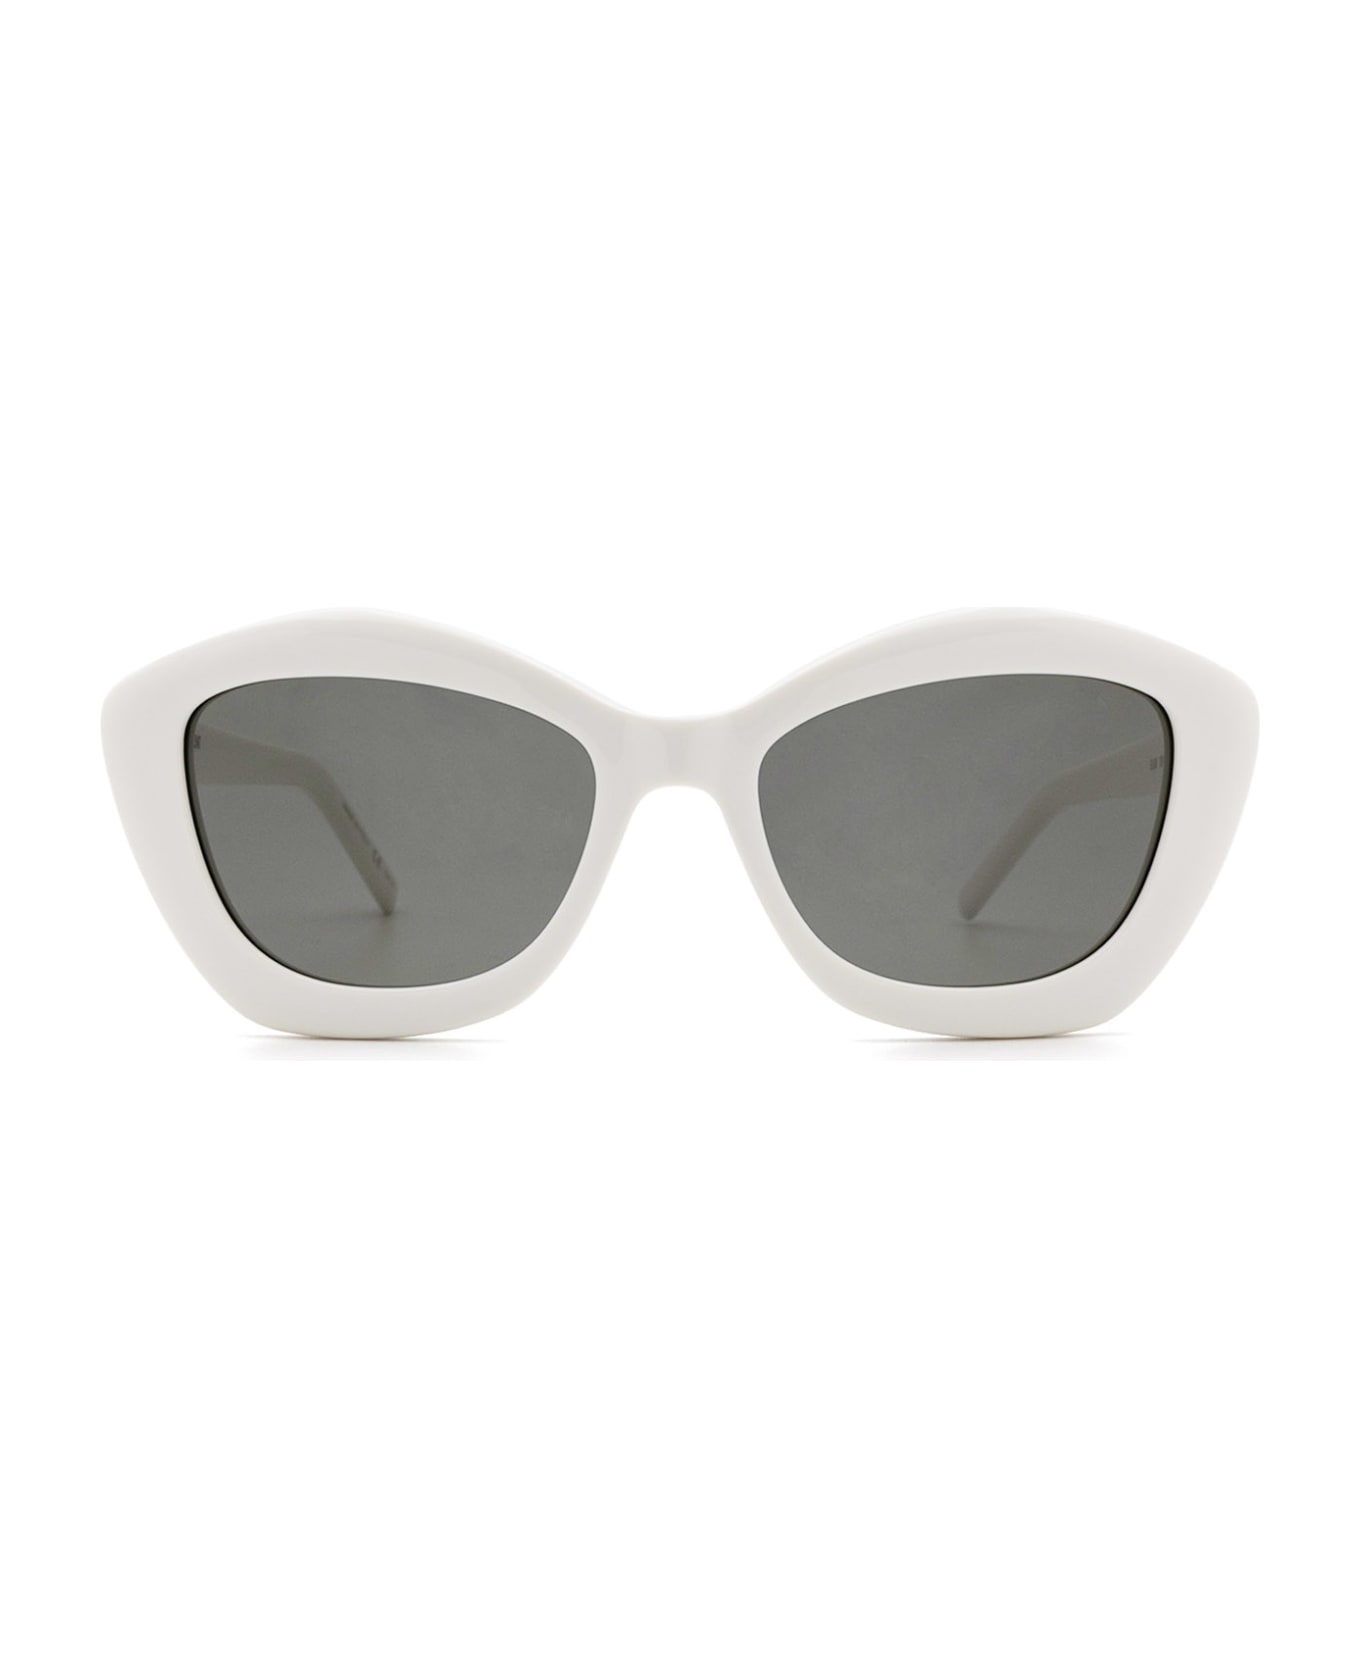 Saint Laurent Eyewear Sl 68 Ivory Sunglasses - Ivory サングラス